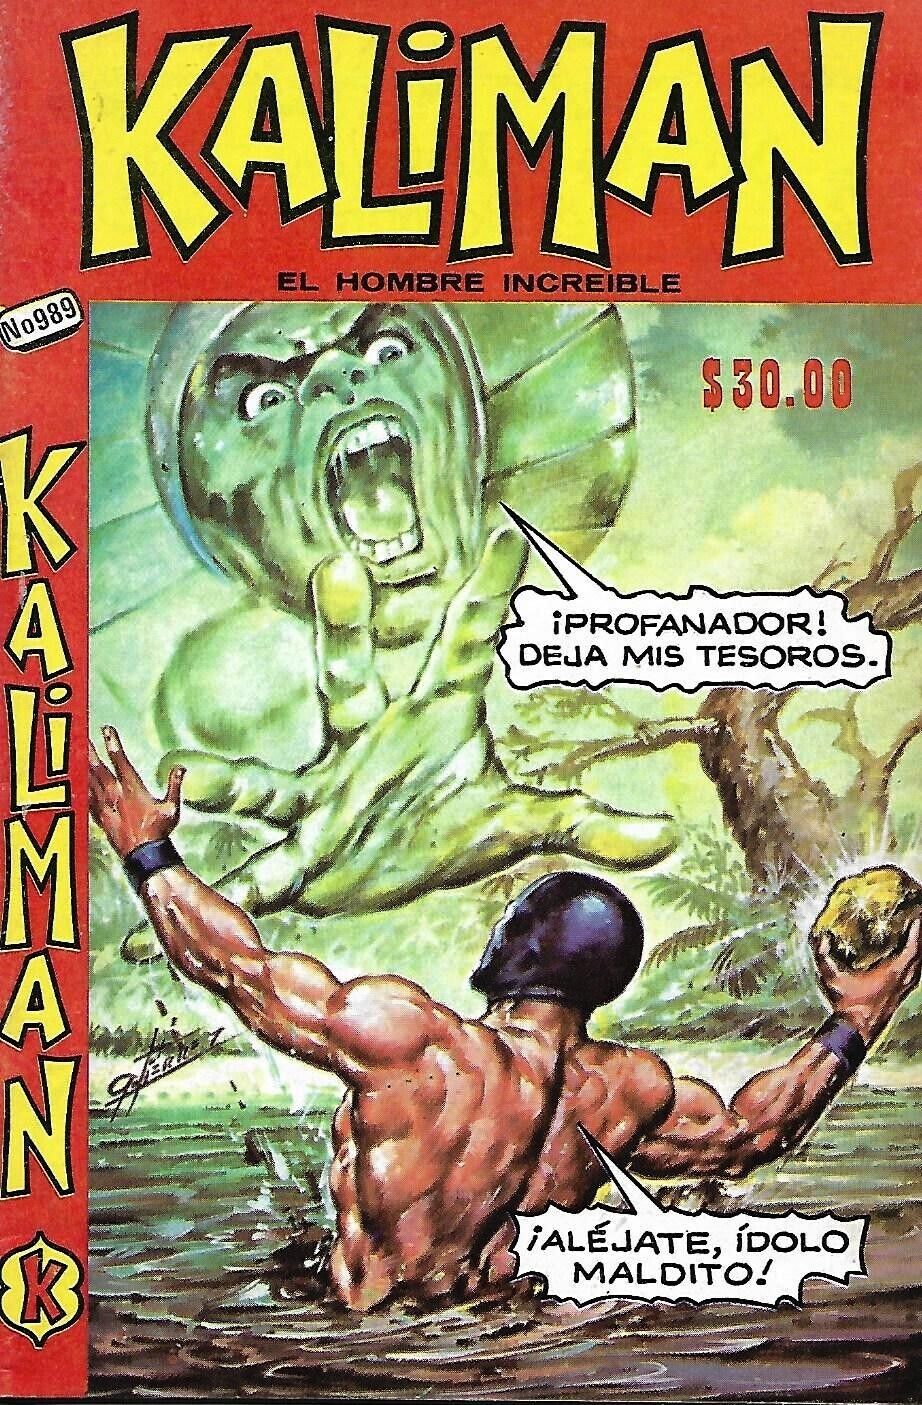 Kaliman El Hombre Increible #989 - Noviembre 9, 1984 - Mexico